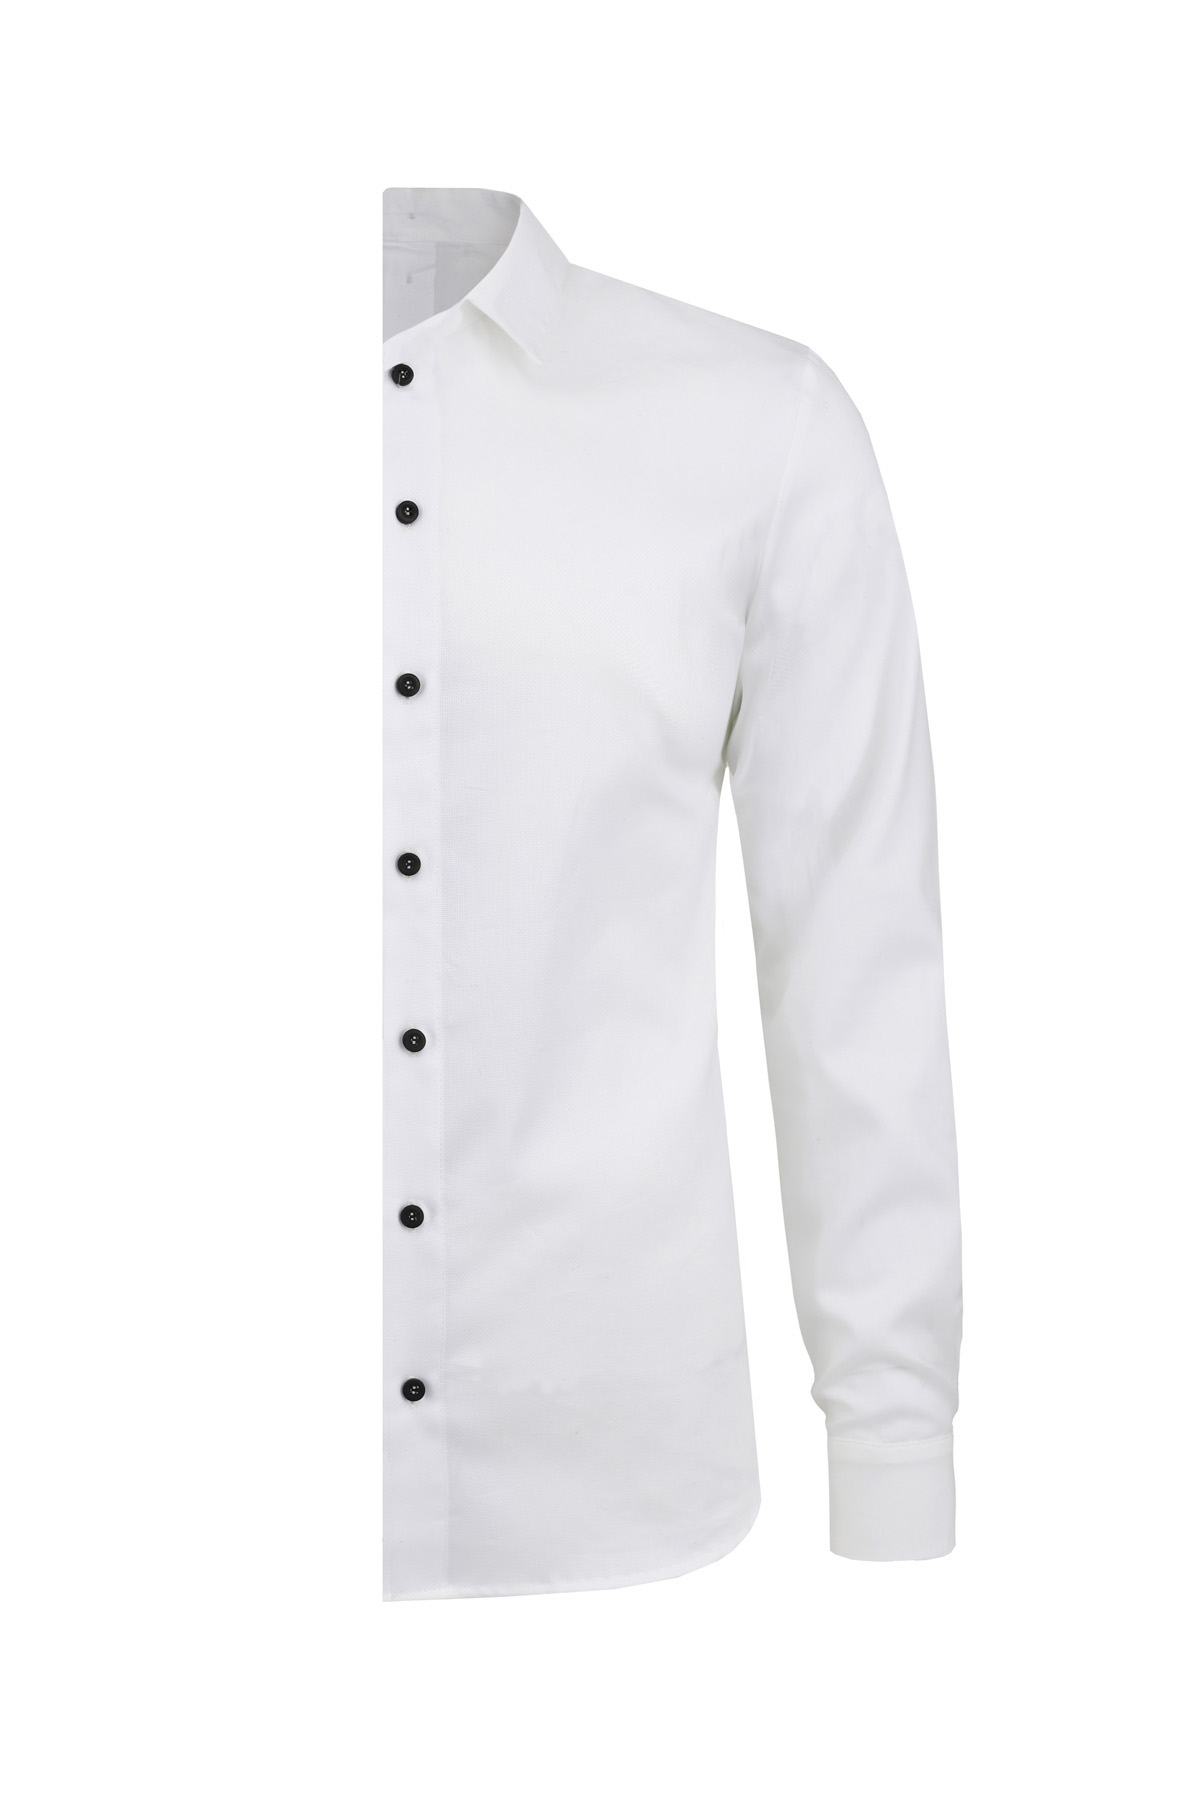 white slim fit shirt – left